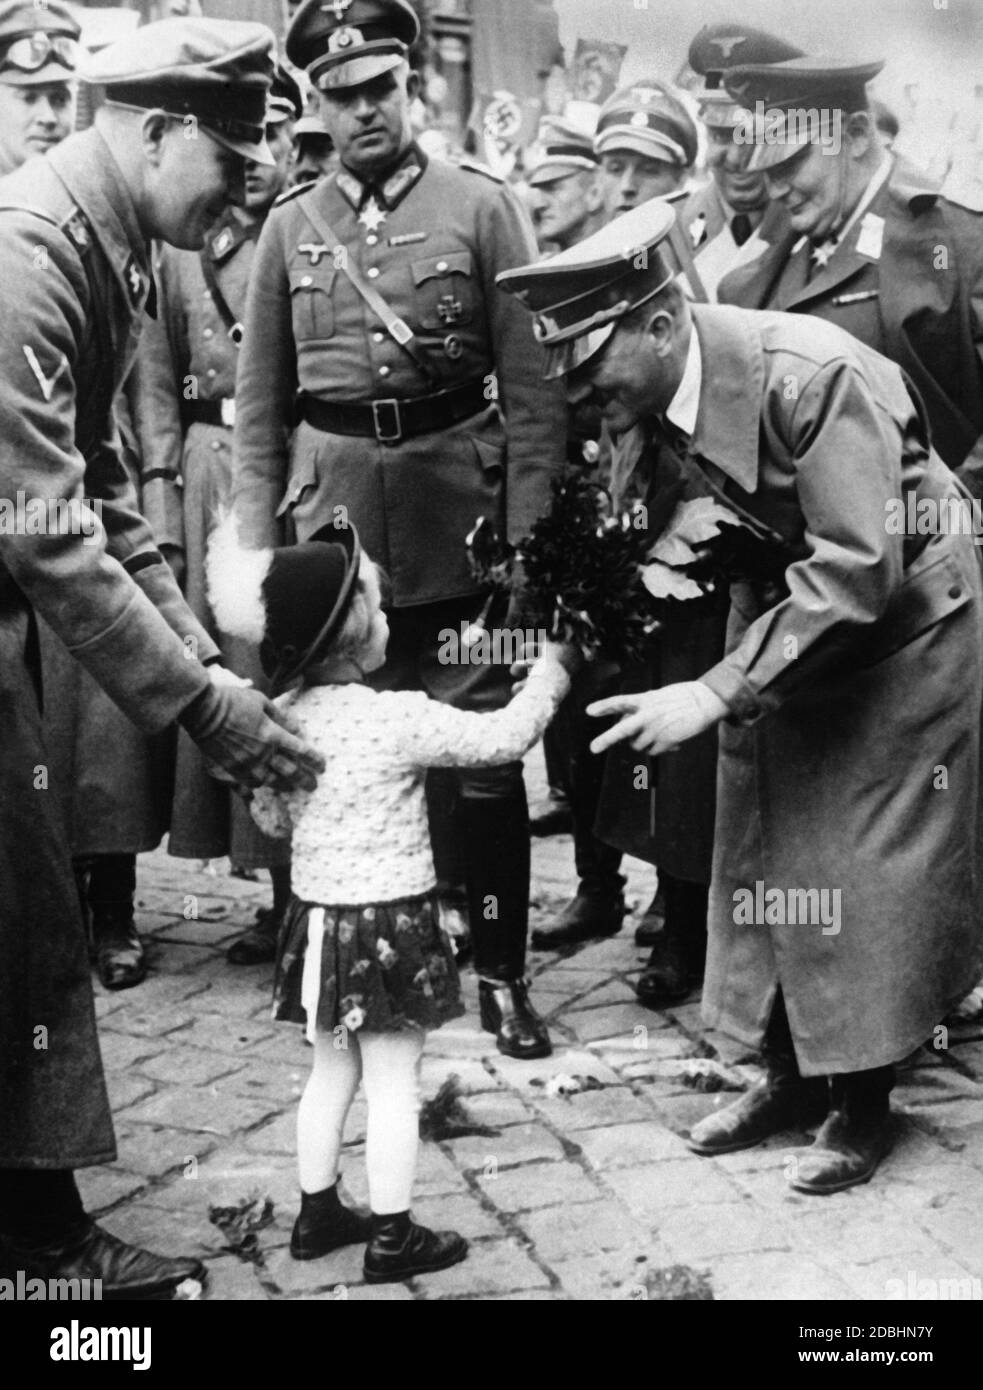 Adolf Hitler, der mit Begeisterung aufgenommen wird, wird von einem kleinen Mädchen mit Blumen überreicht, als die Wehrmacht das Sudetenland einmarschiert. Hermann Göring steht hinter Hitler. Stockfoto